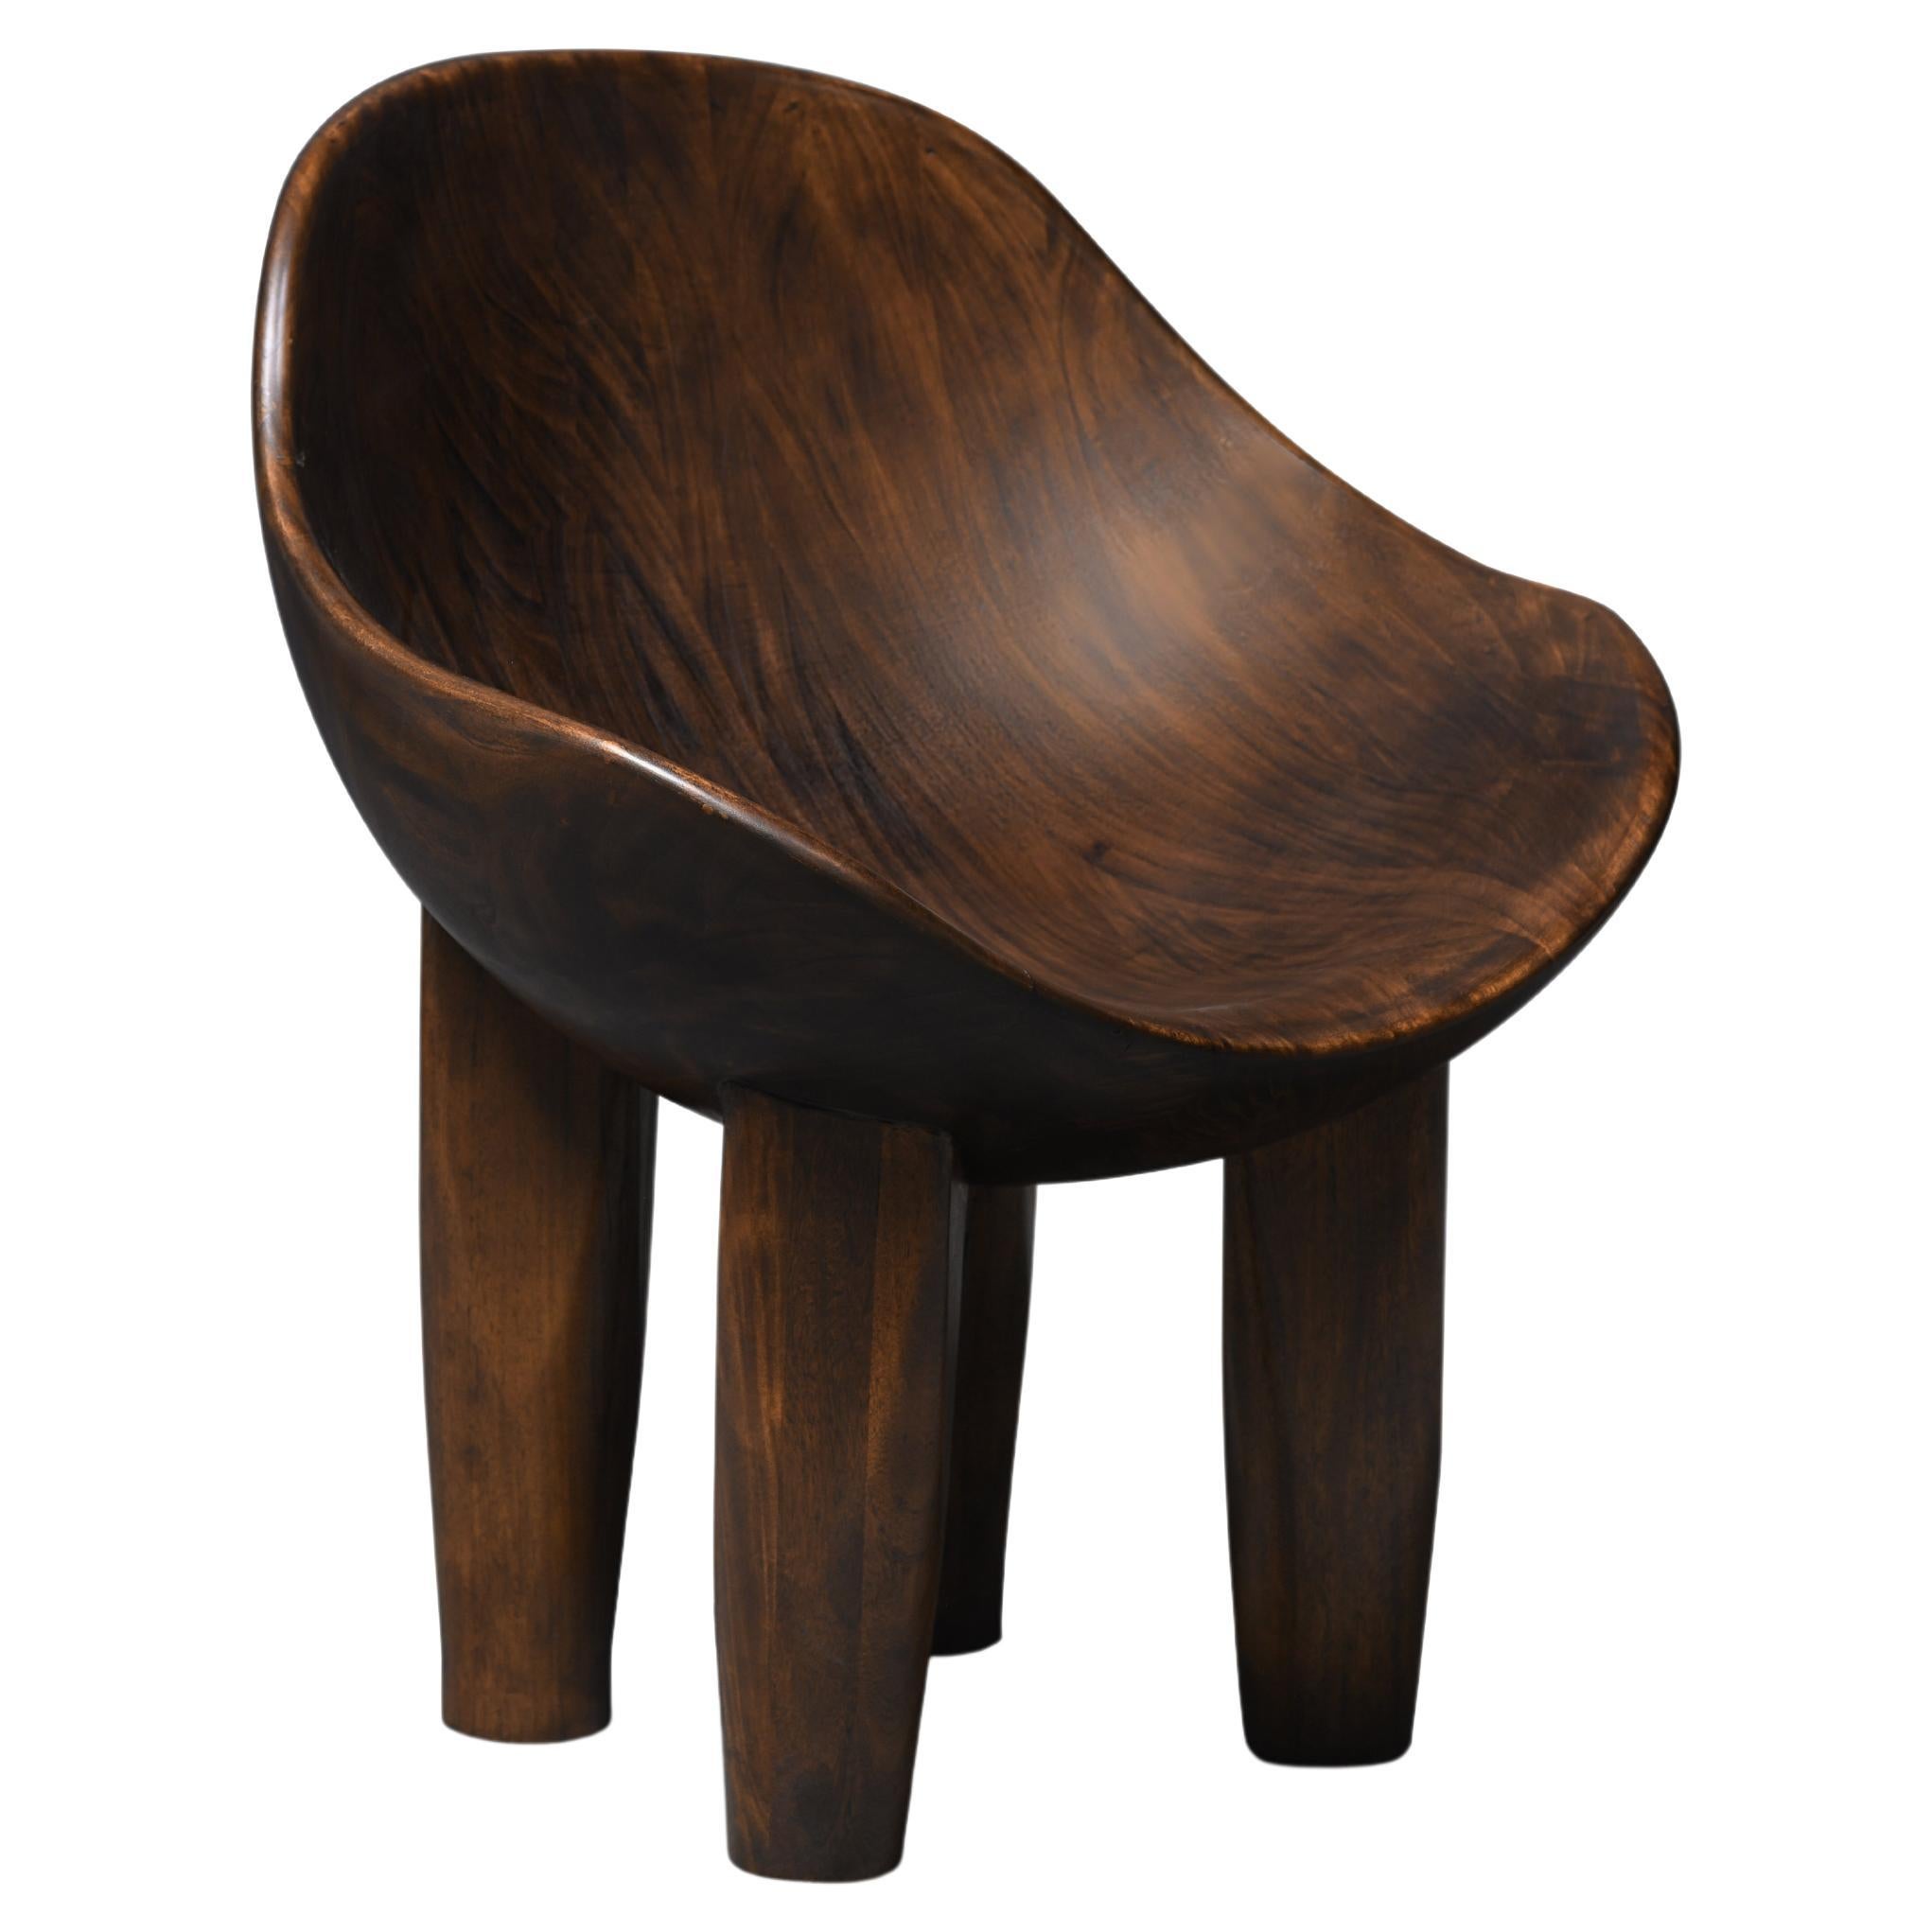 La chaise Aman est entièrement sculptée en bois massif avec une forme concave en vente